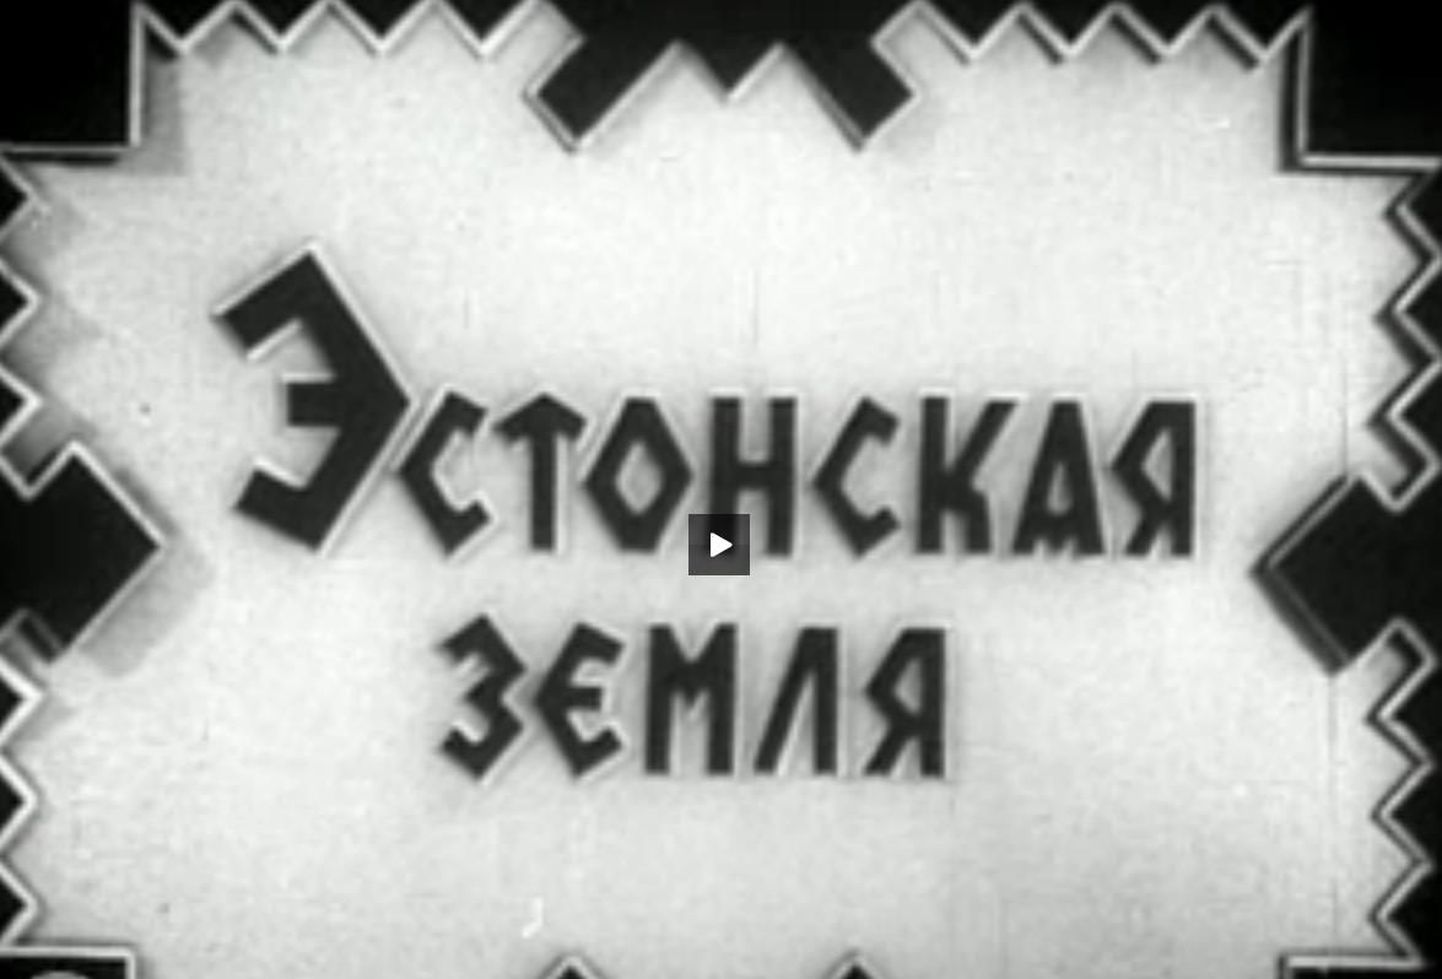 Кадр из фильма "Эстонская земля", снятого в 1941 году.